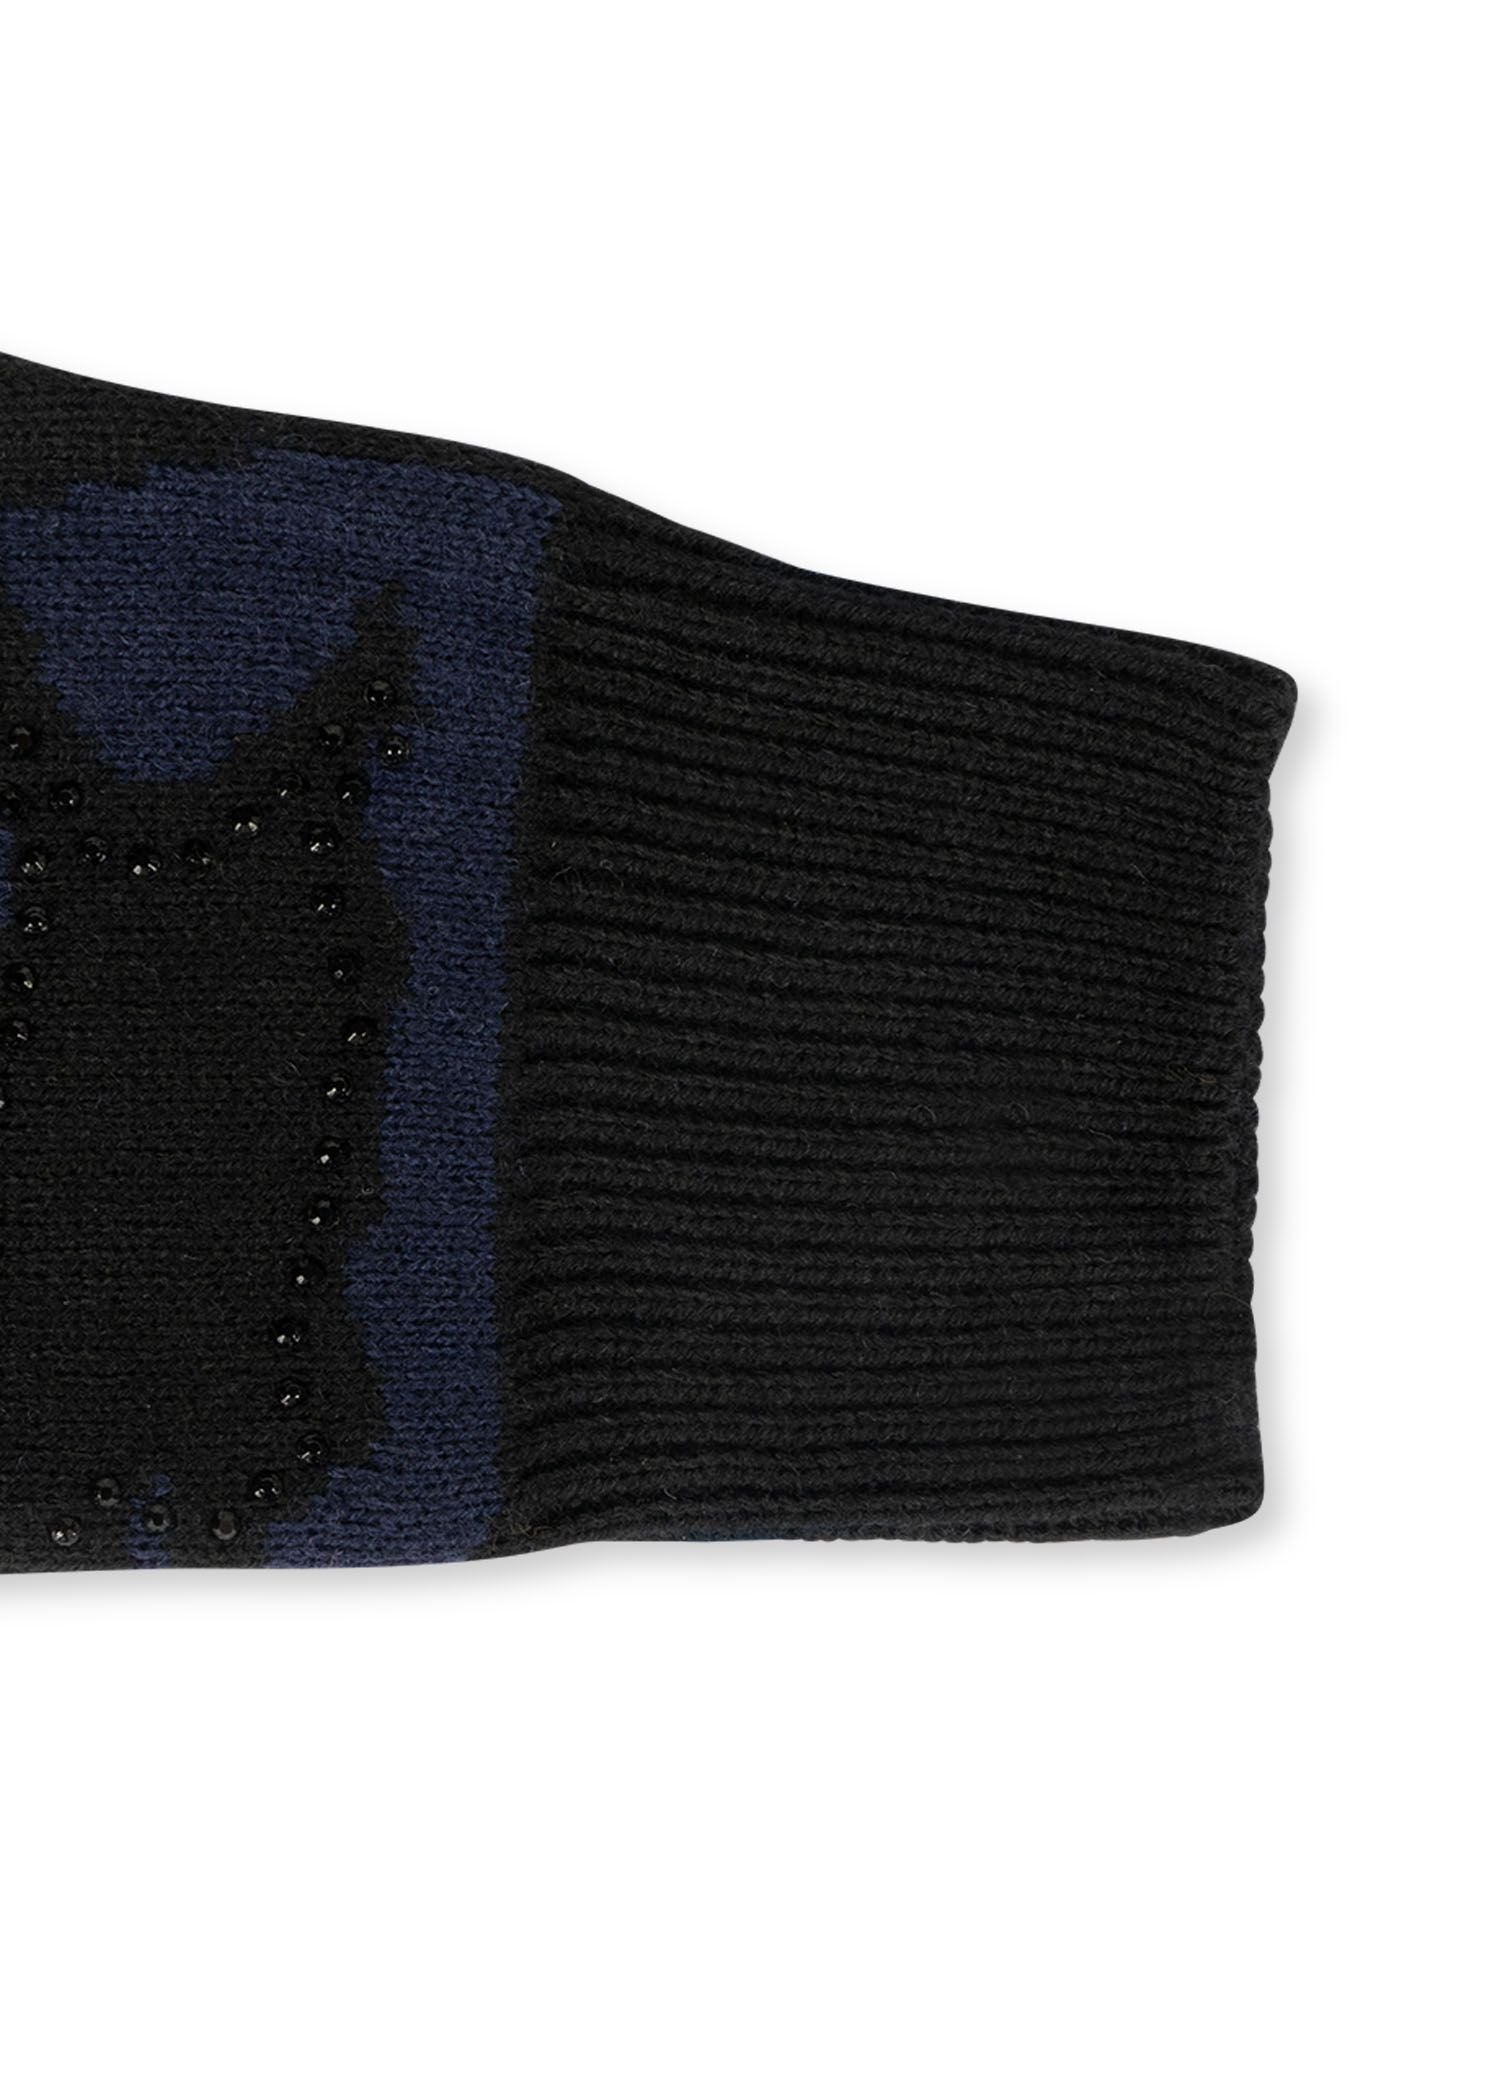 colorado black/navy camo fingerless gloves